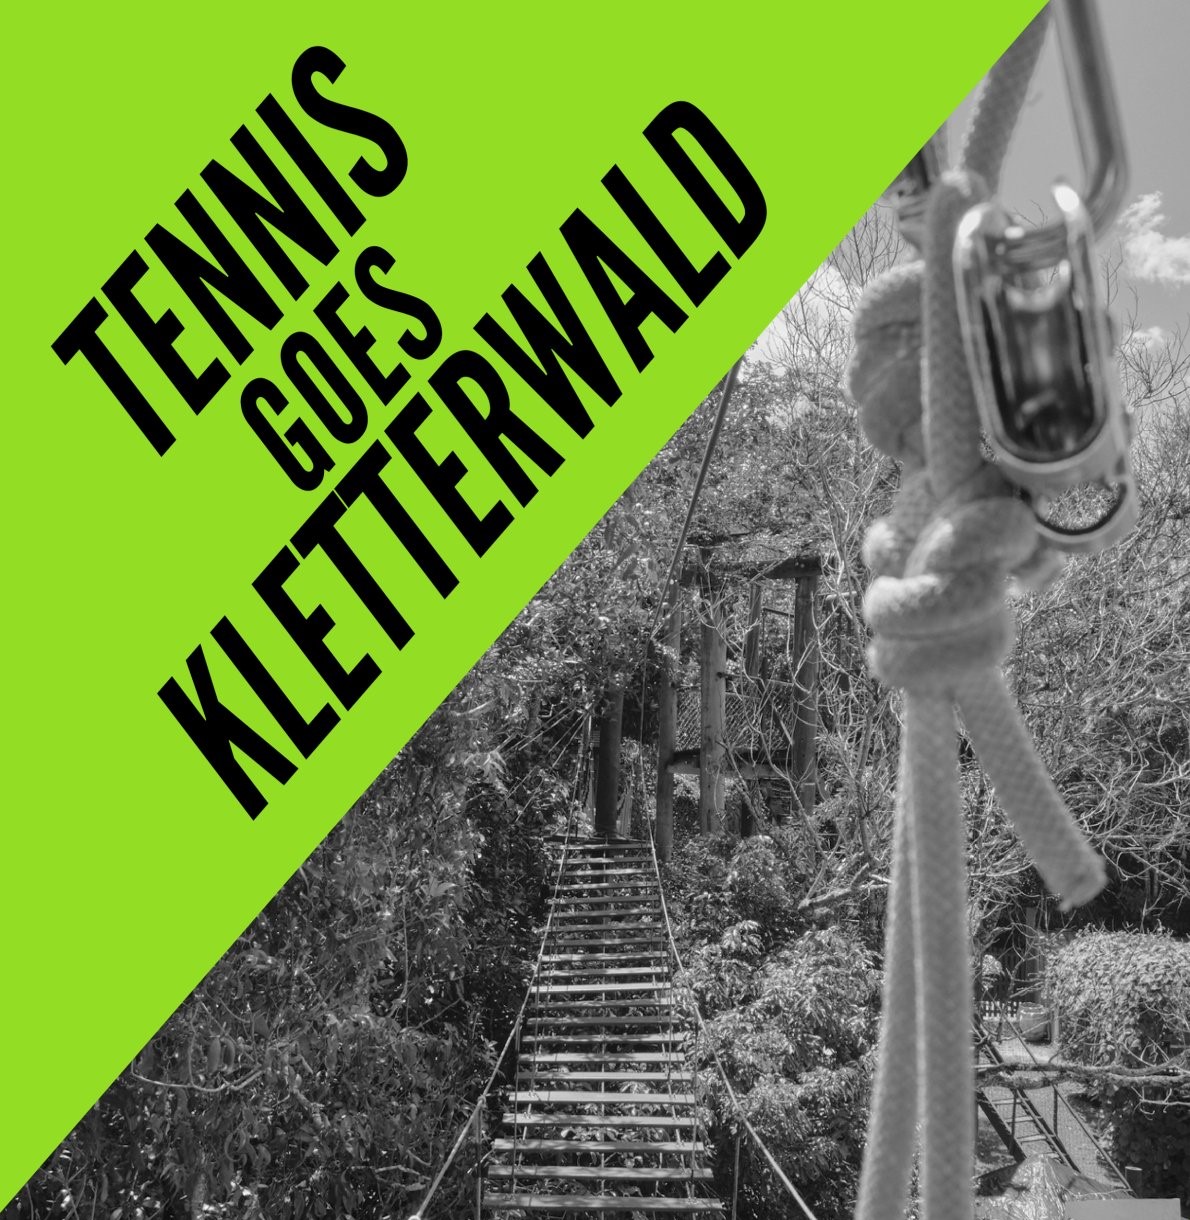 Tennis goes Kletterwald